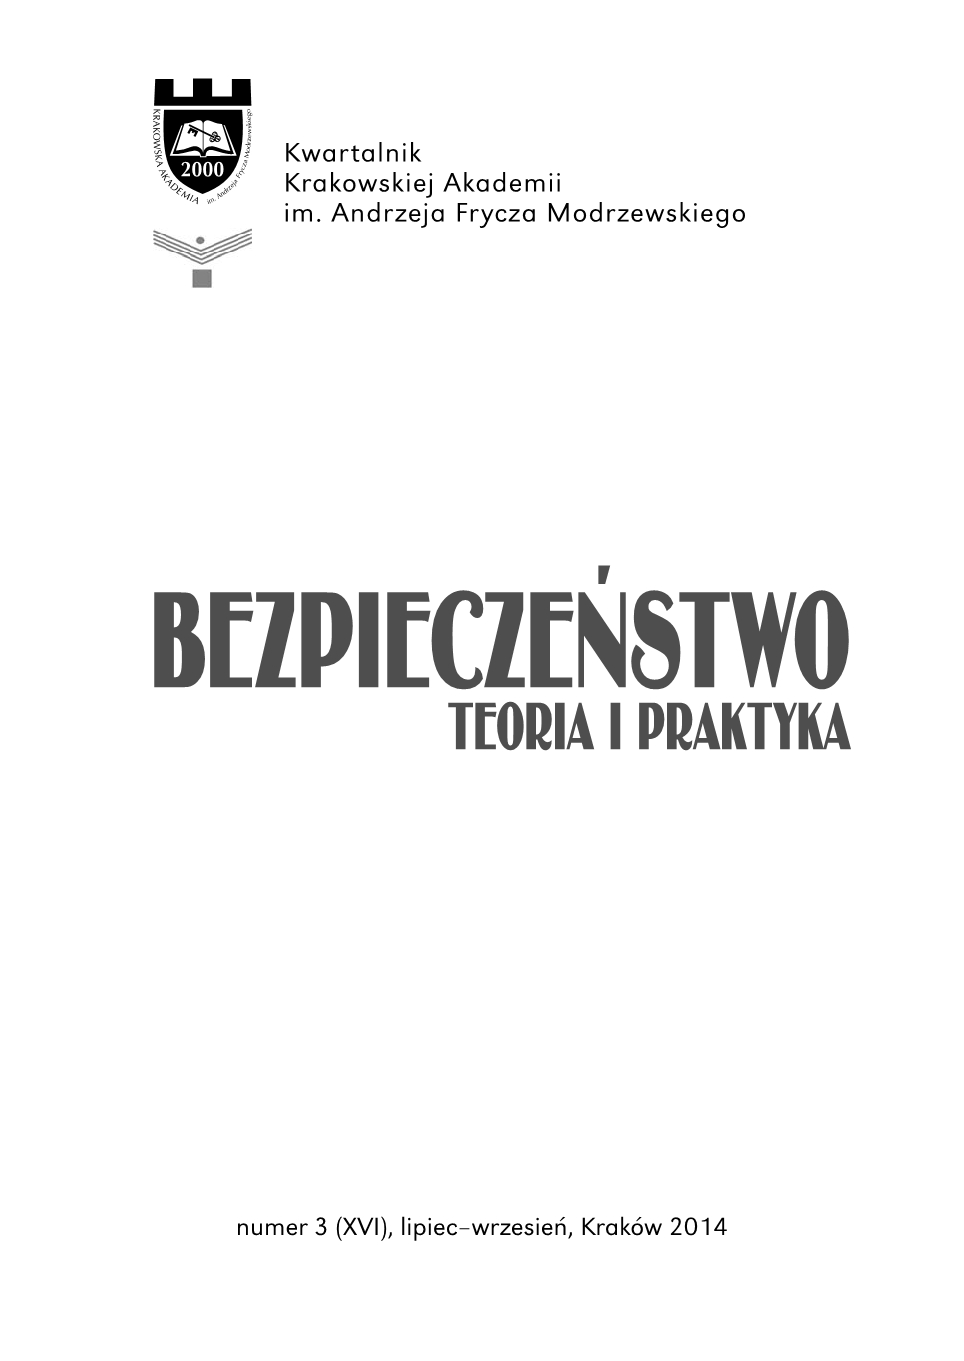 Katastrofy naturalne i cywilizacyjne. Zagrożenia i ochrona infrastruktury krytycznej, edited by Marian Żuber - book review Cover Image